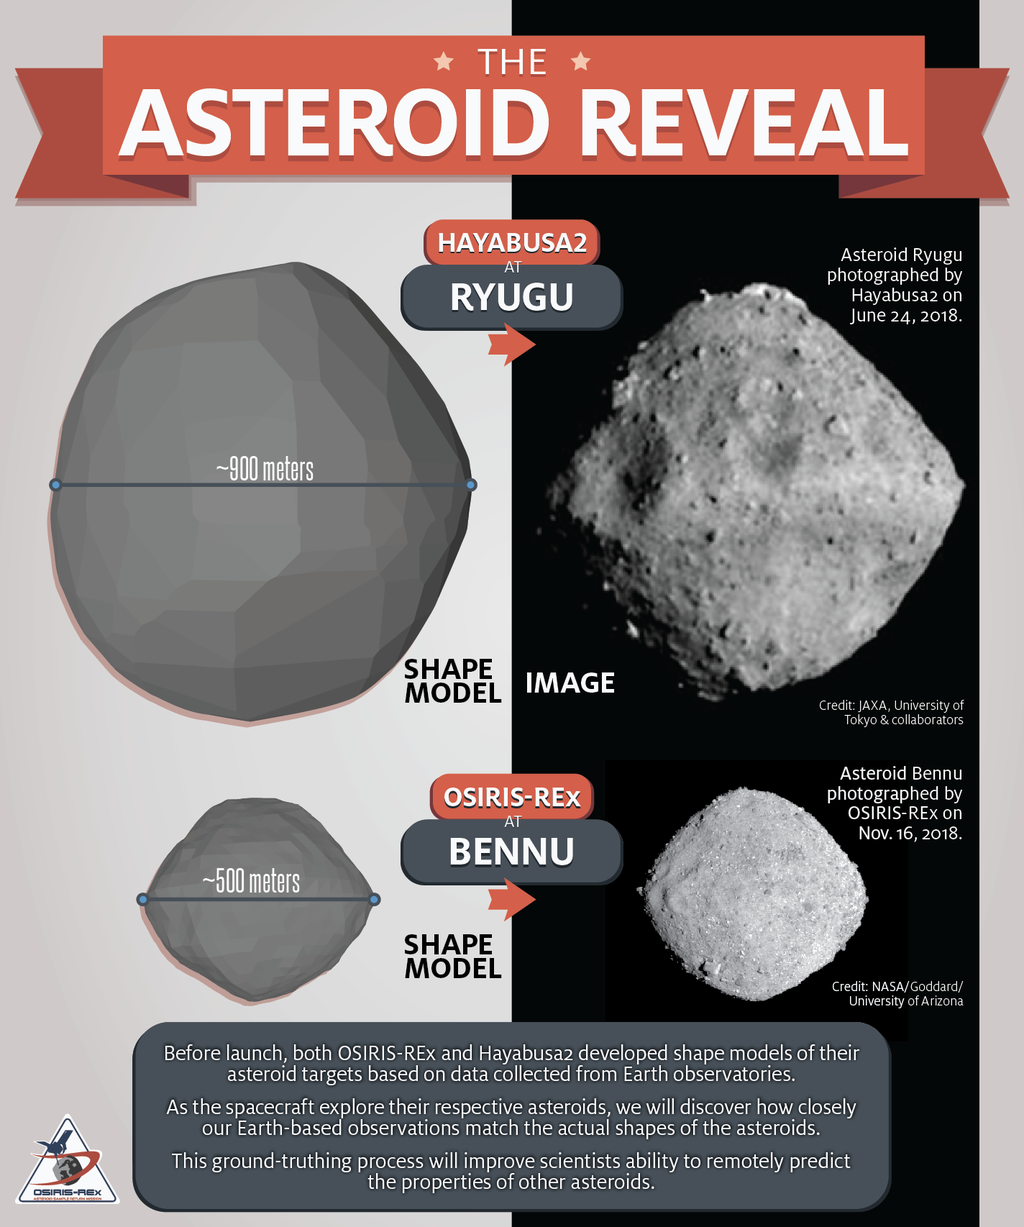 Comparação entre os asteroides Ryugu e Bennu, ambos com o mesmo formato de "pião" devido à concentração de matéria na faixa equatorial (Imagem: University of Arizona)